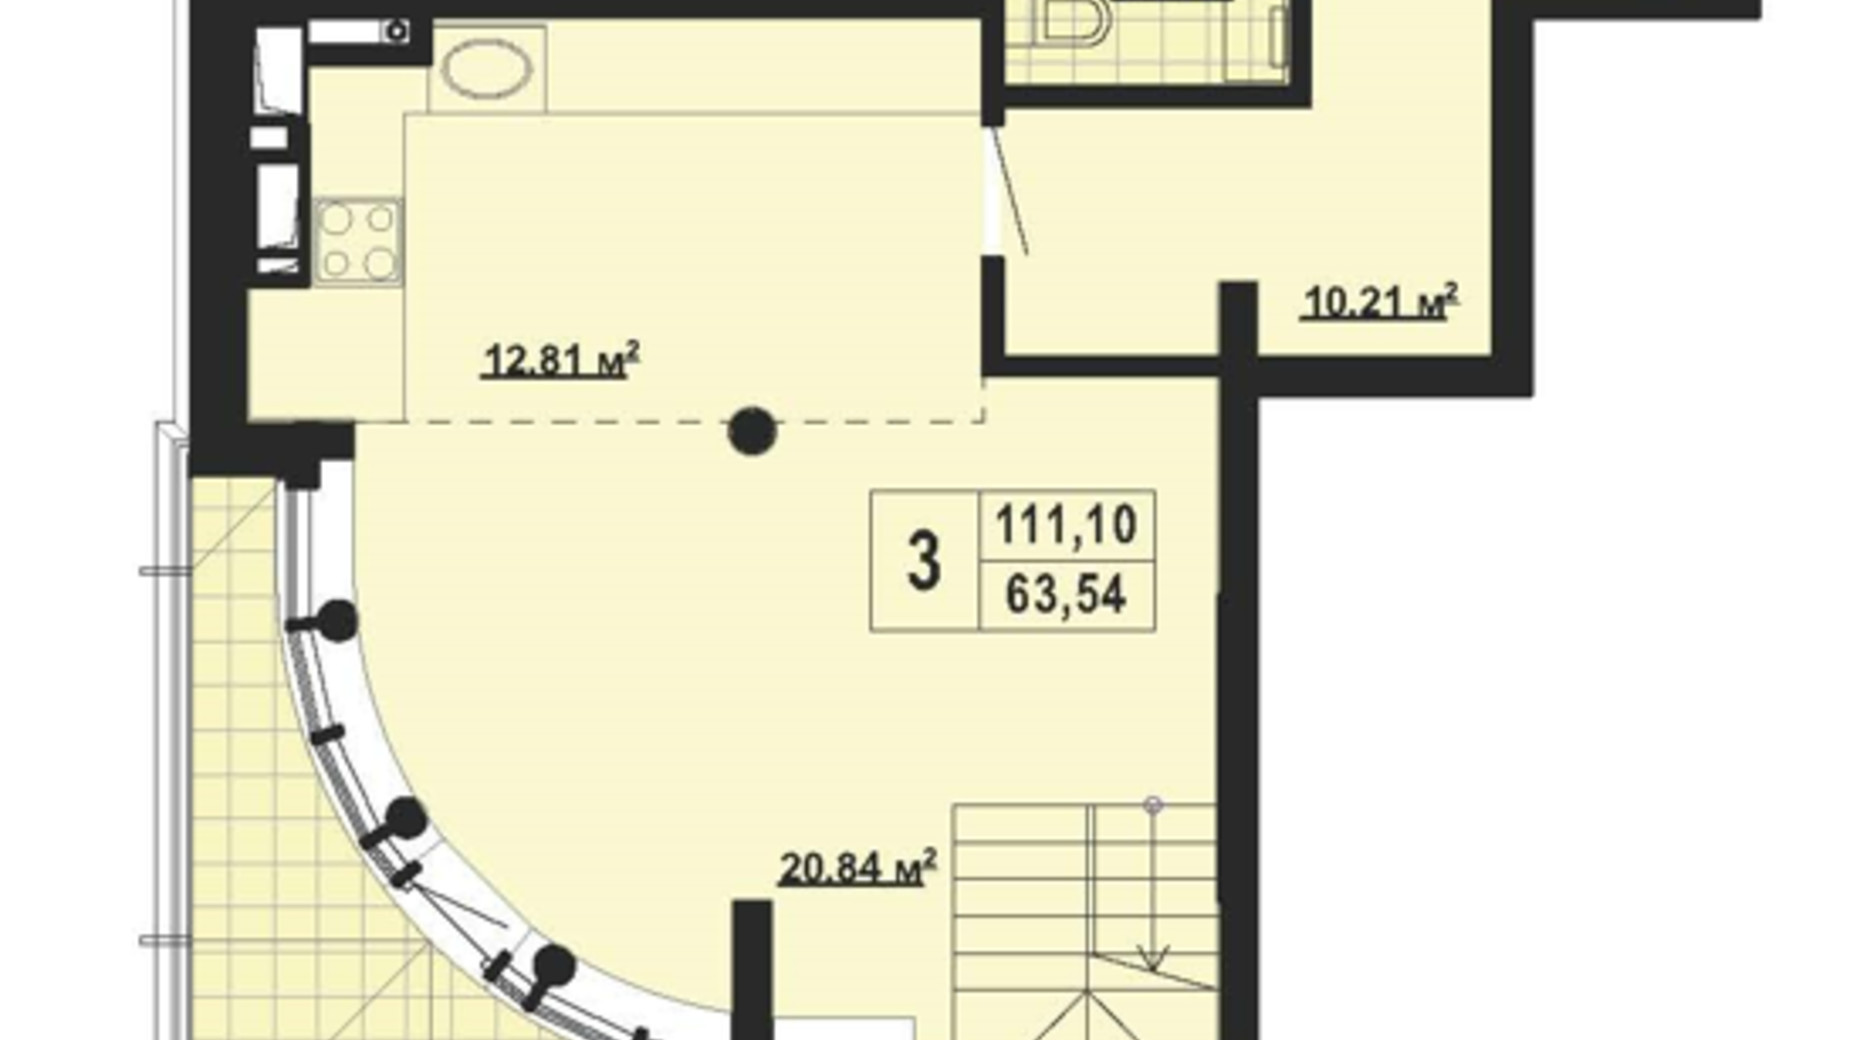 Планировка много­уровневой квартиры в ЖК Парковый Город 111.1 м², фото 650576